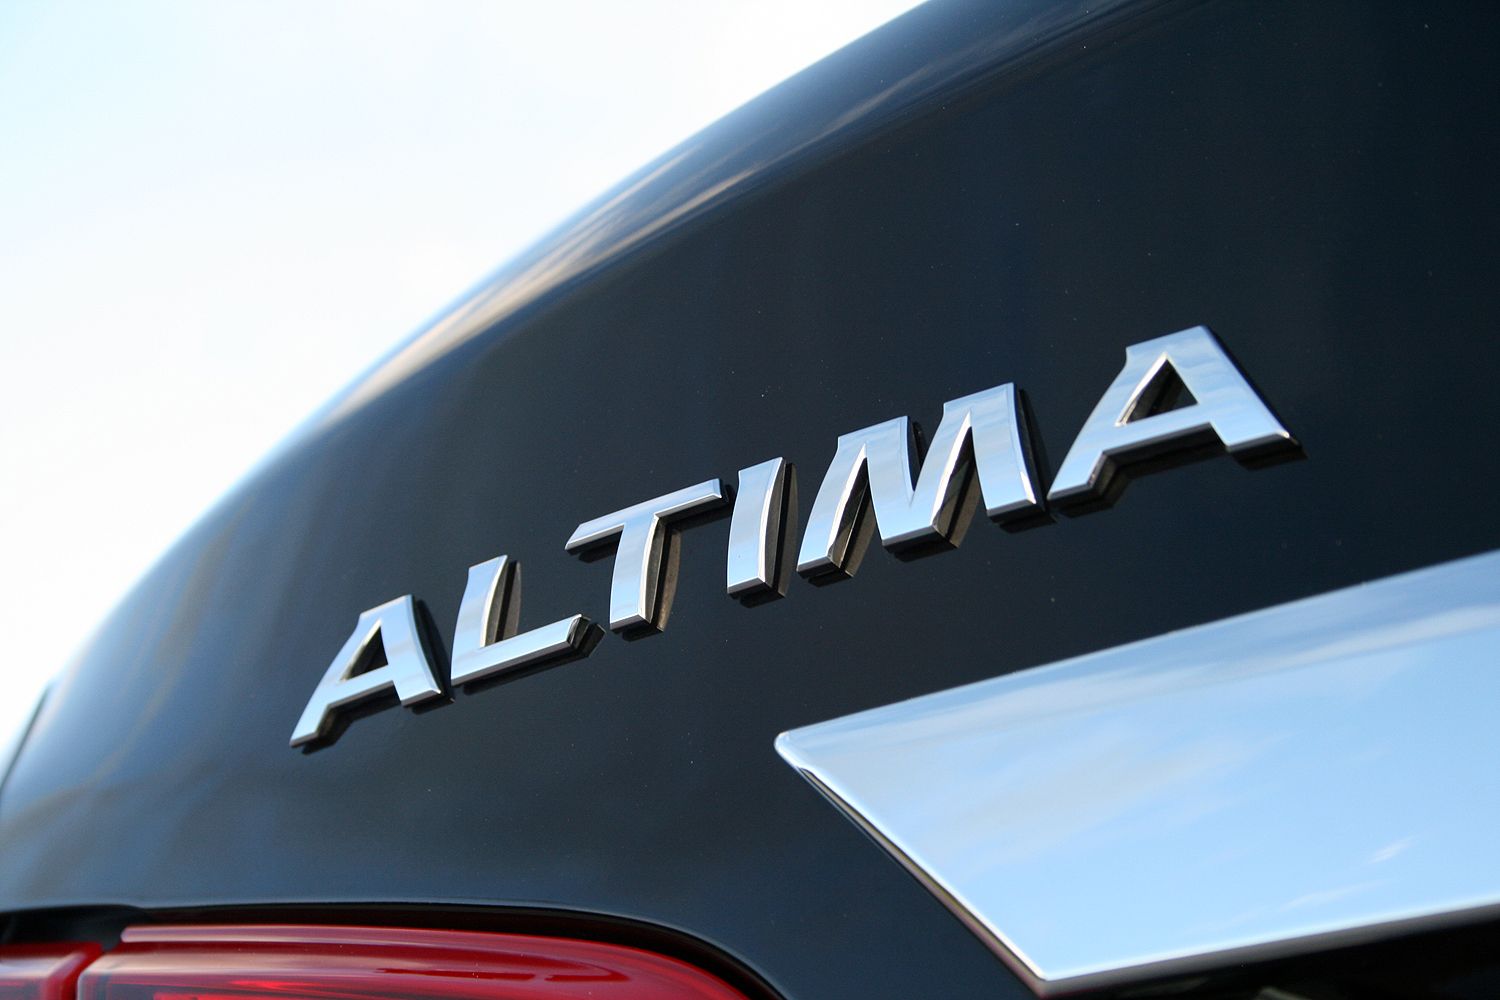 2016 Nissan Altima – Driven